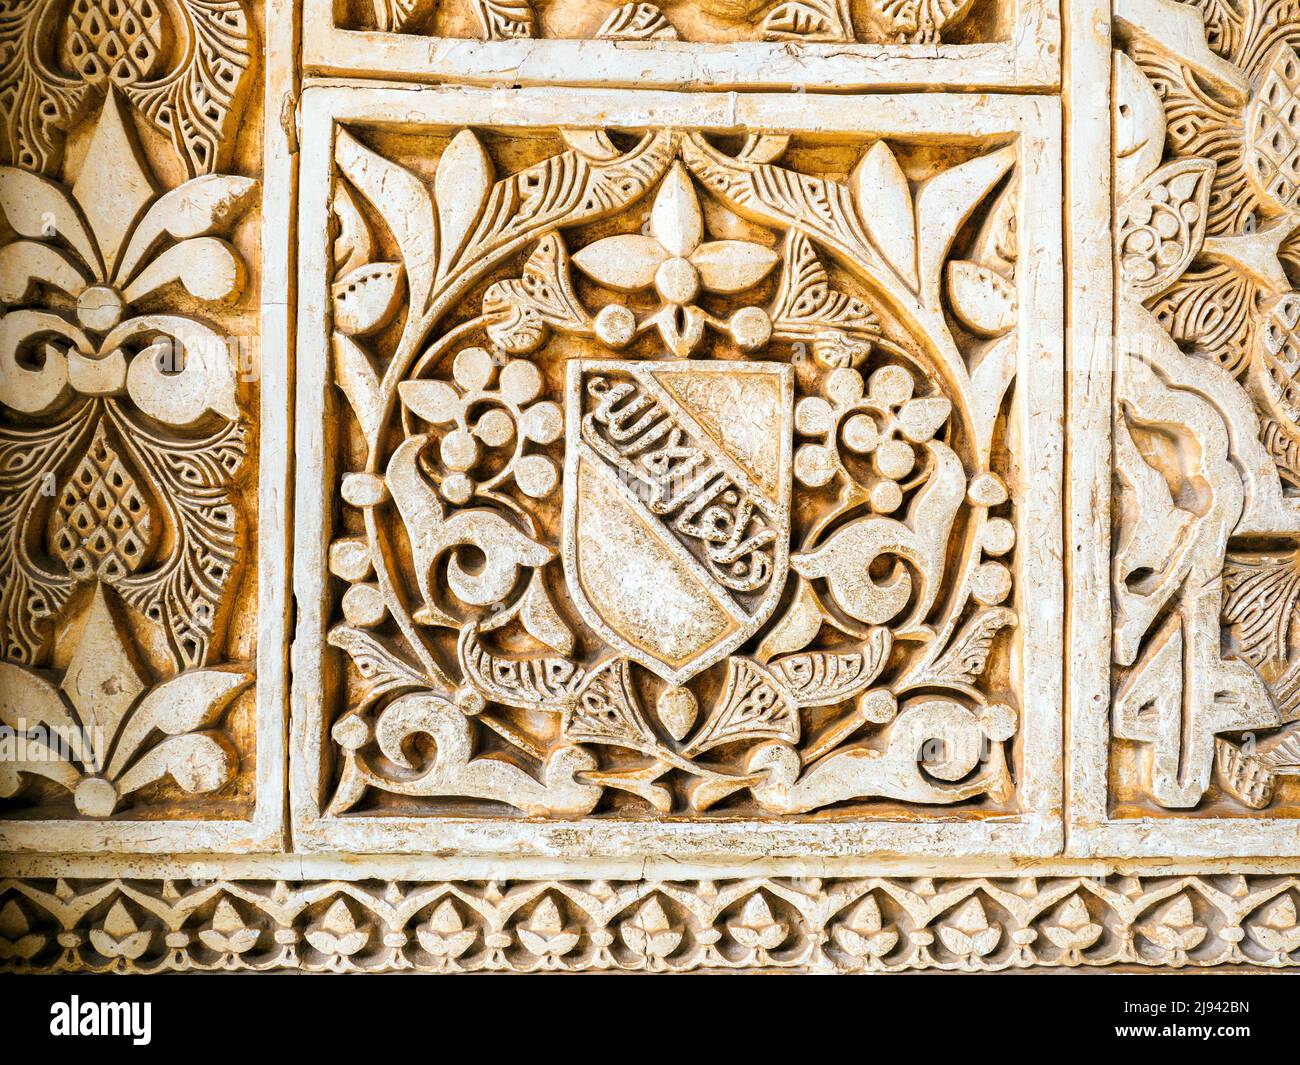 Décoration dans la salle des deux Sœurs (Sala de las dos Hermanas) des palais royaux Nasrides - complexe Alhambra - Grenade, Espagne Banque D'Images